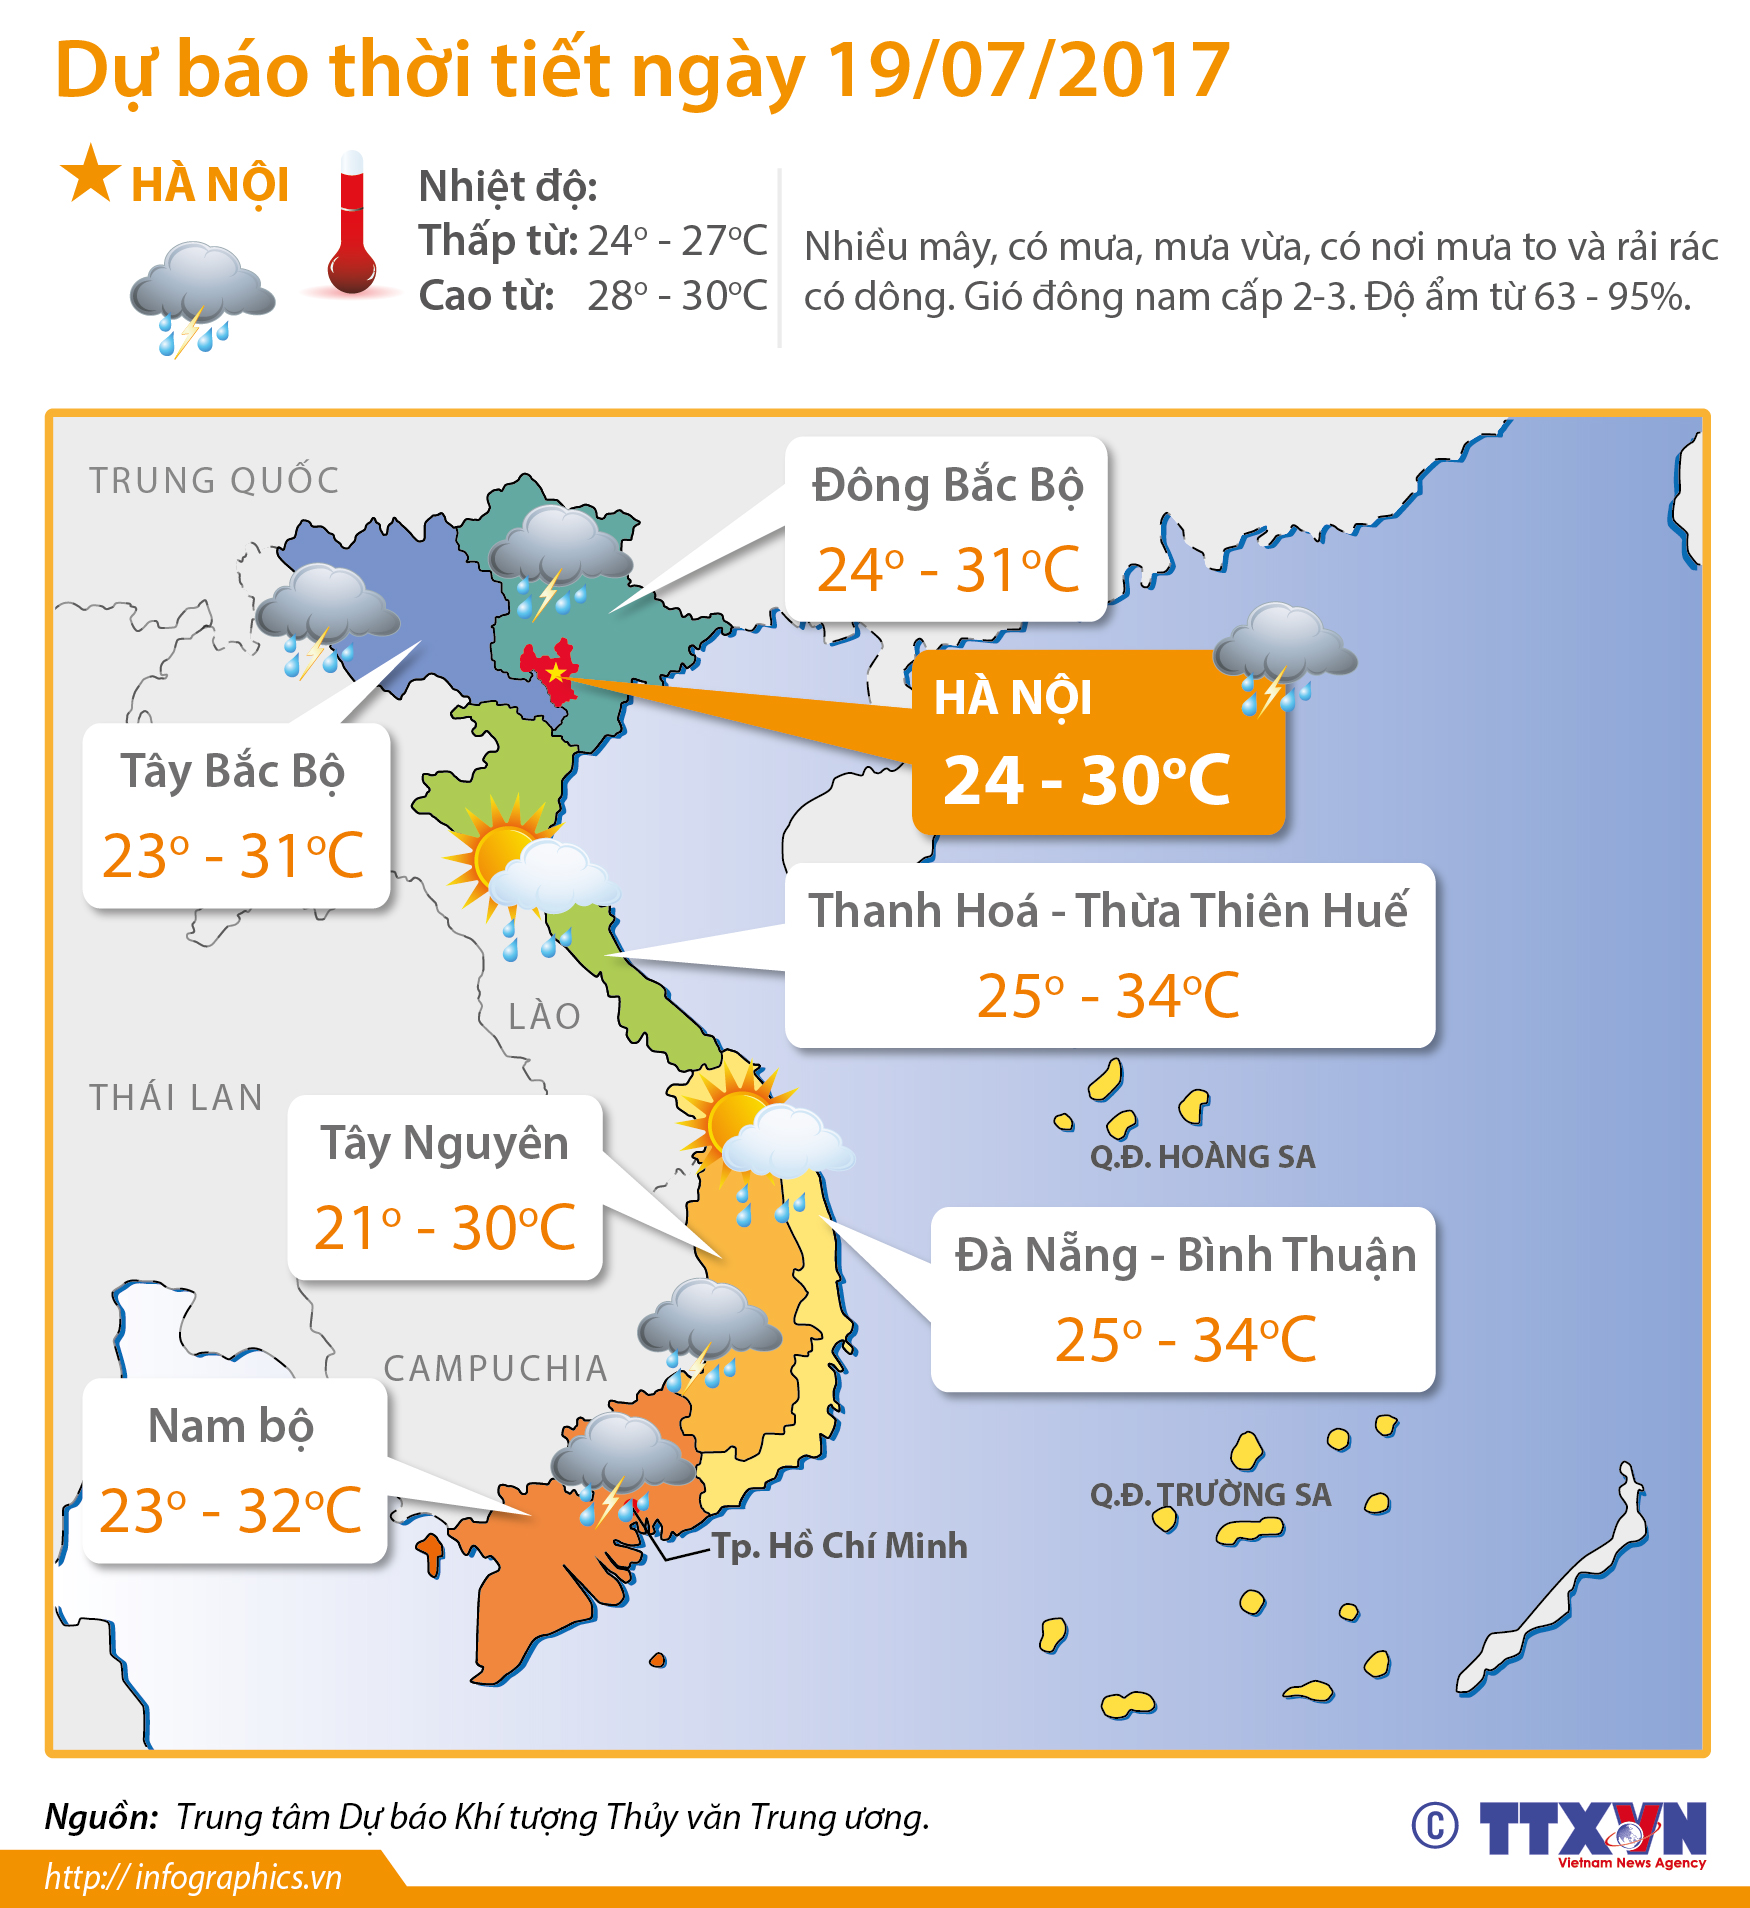 Dự báo thời tiết ngày 19/07/2017: Hà Nội mưa chủ yếu vào chiều tối